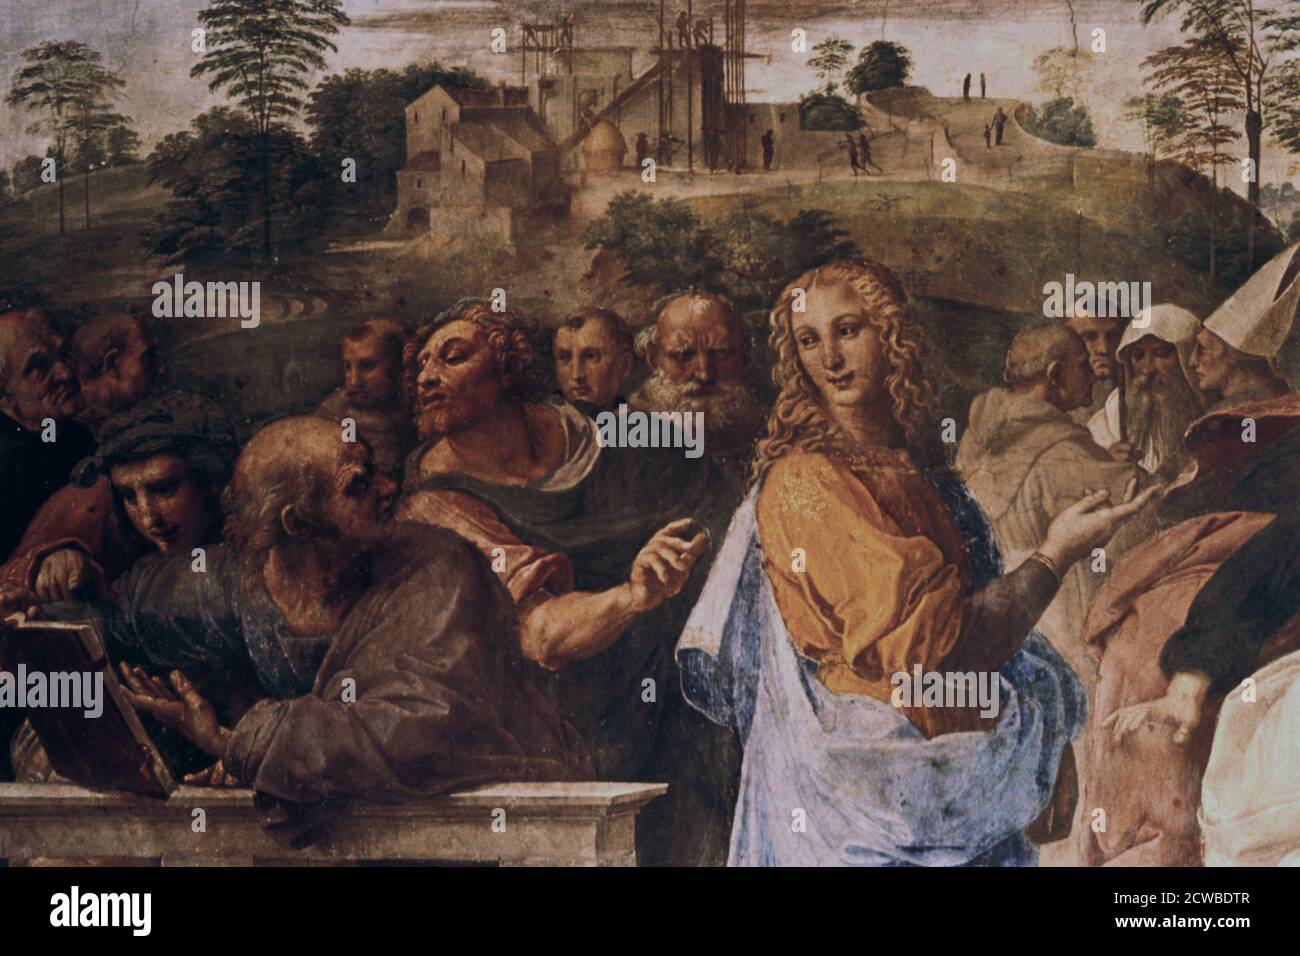 La dispute sur le Saint Sacrement », (détail), 1508-1509. Artiste: Raphaël. Raphael(1483-1520) est un peintre et architecte italien de la haute Renaissance. Son travail est admiré pour sa clarté de forme, sa facilité de composition et sa réalisation visuelle de grandeur humaine. Banque D'Images